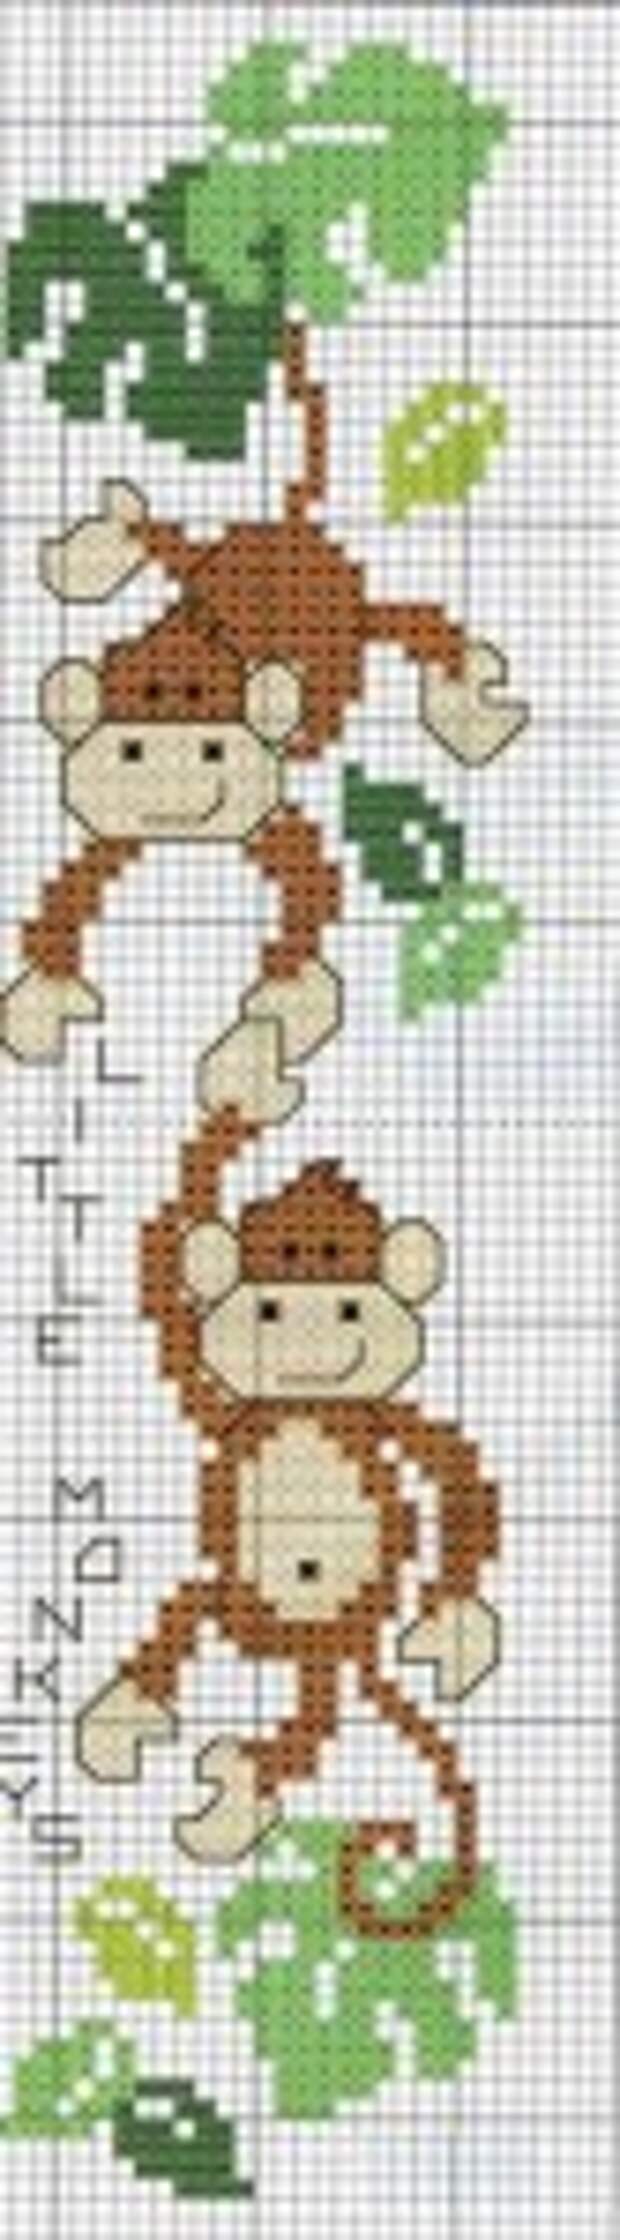 вышивка обезьянки